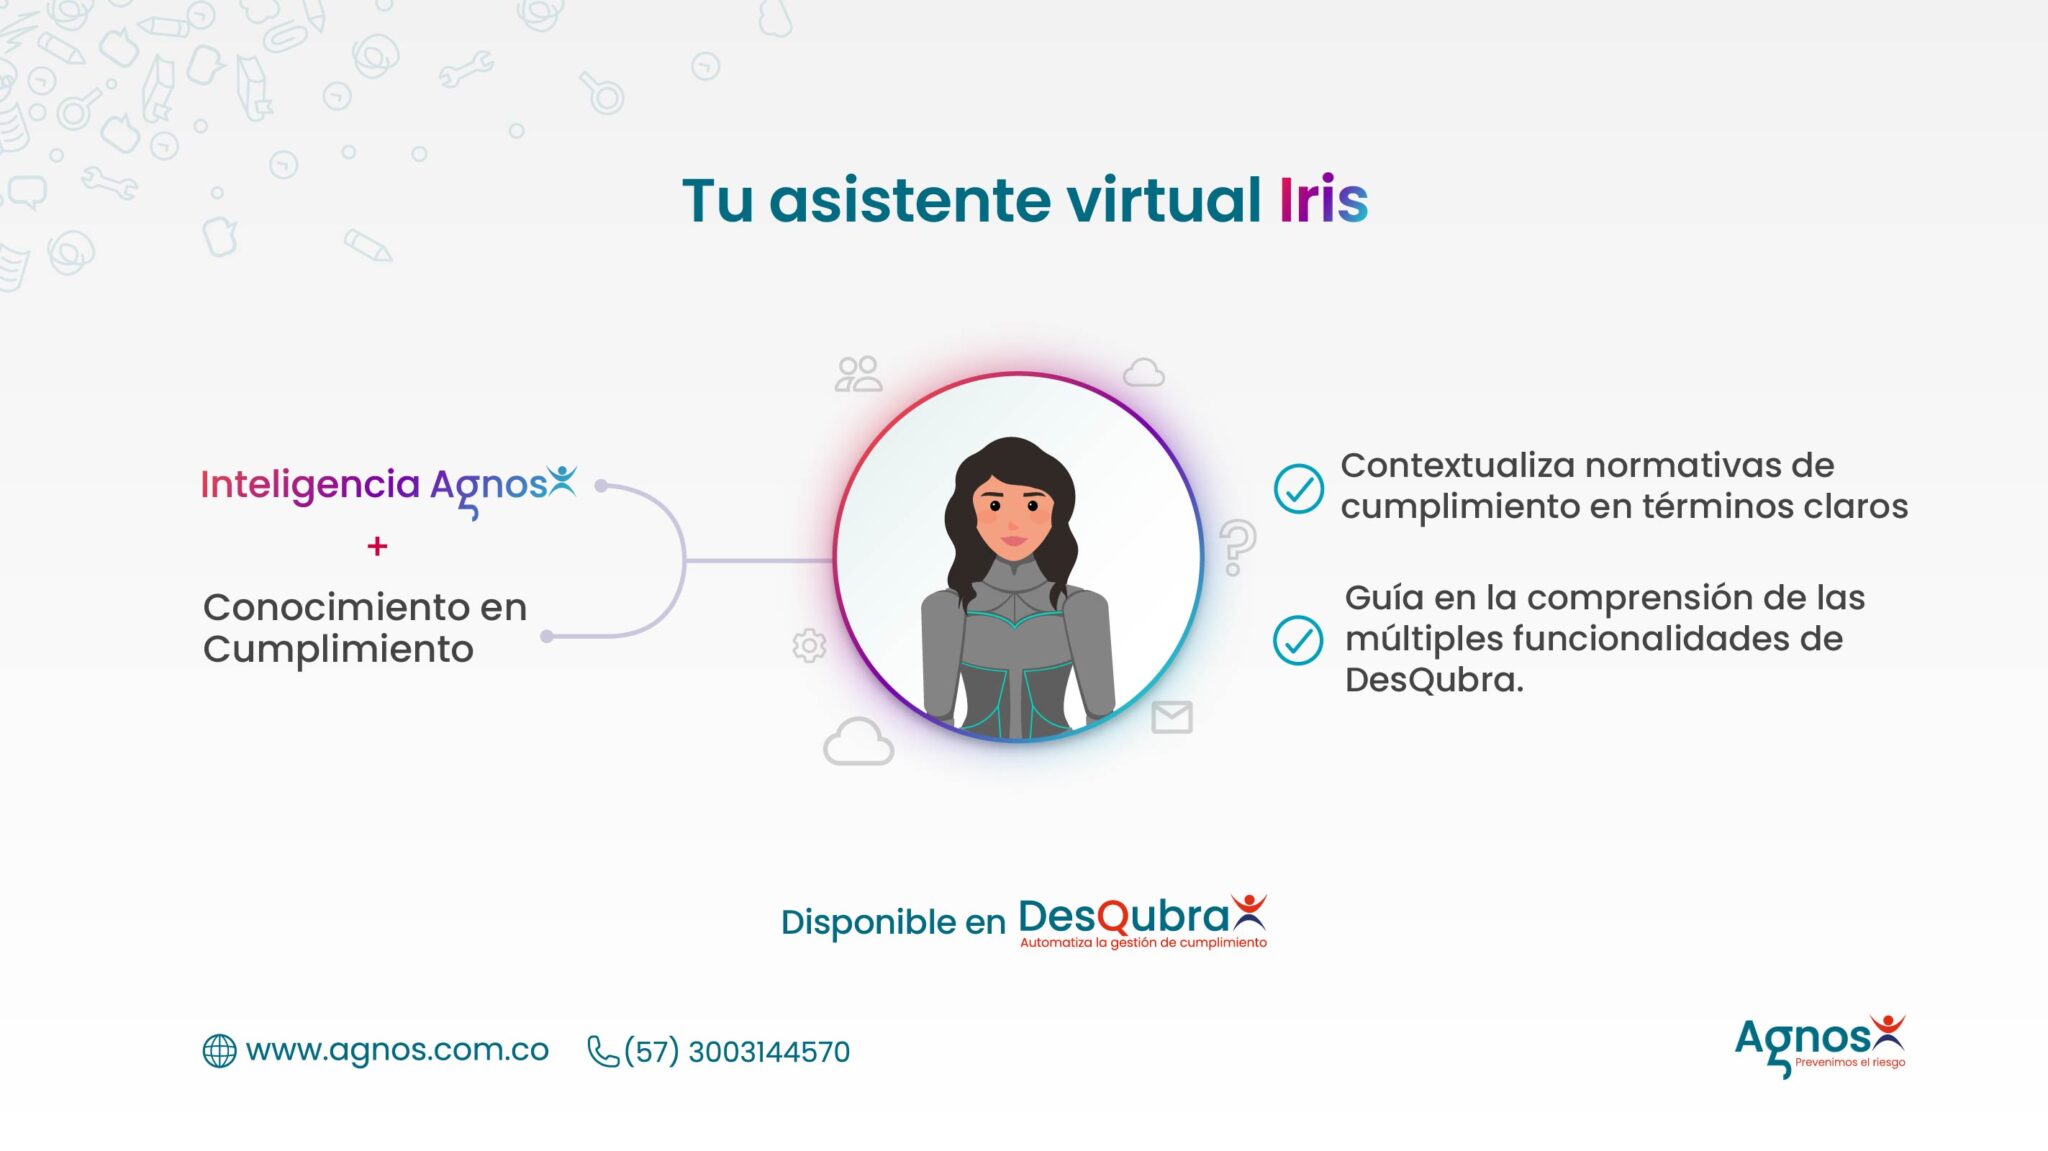 Tu asistente virtual Iris